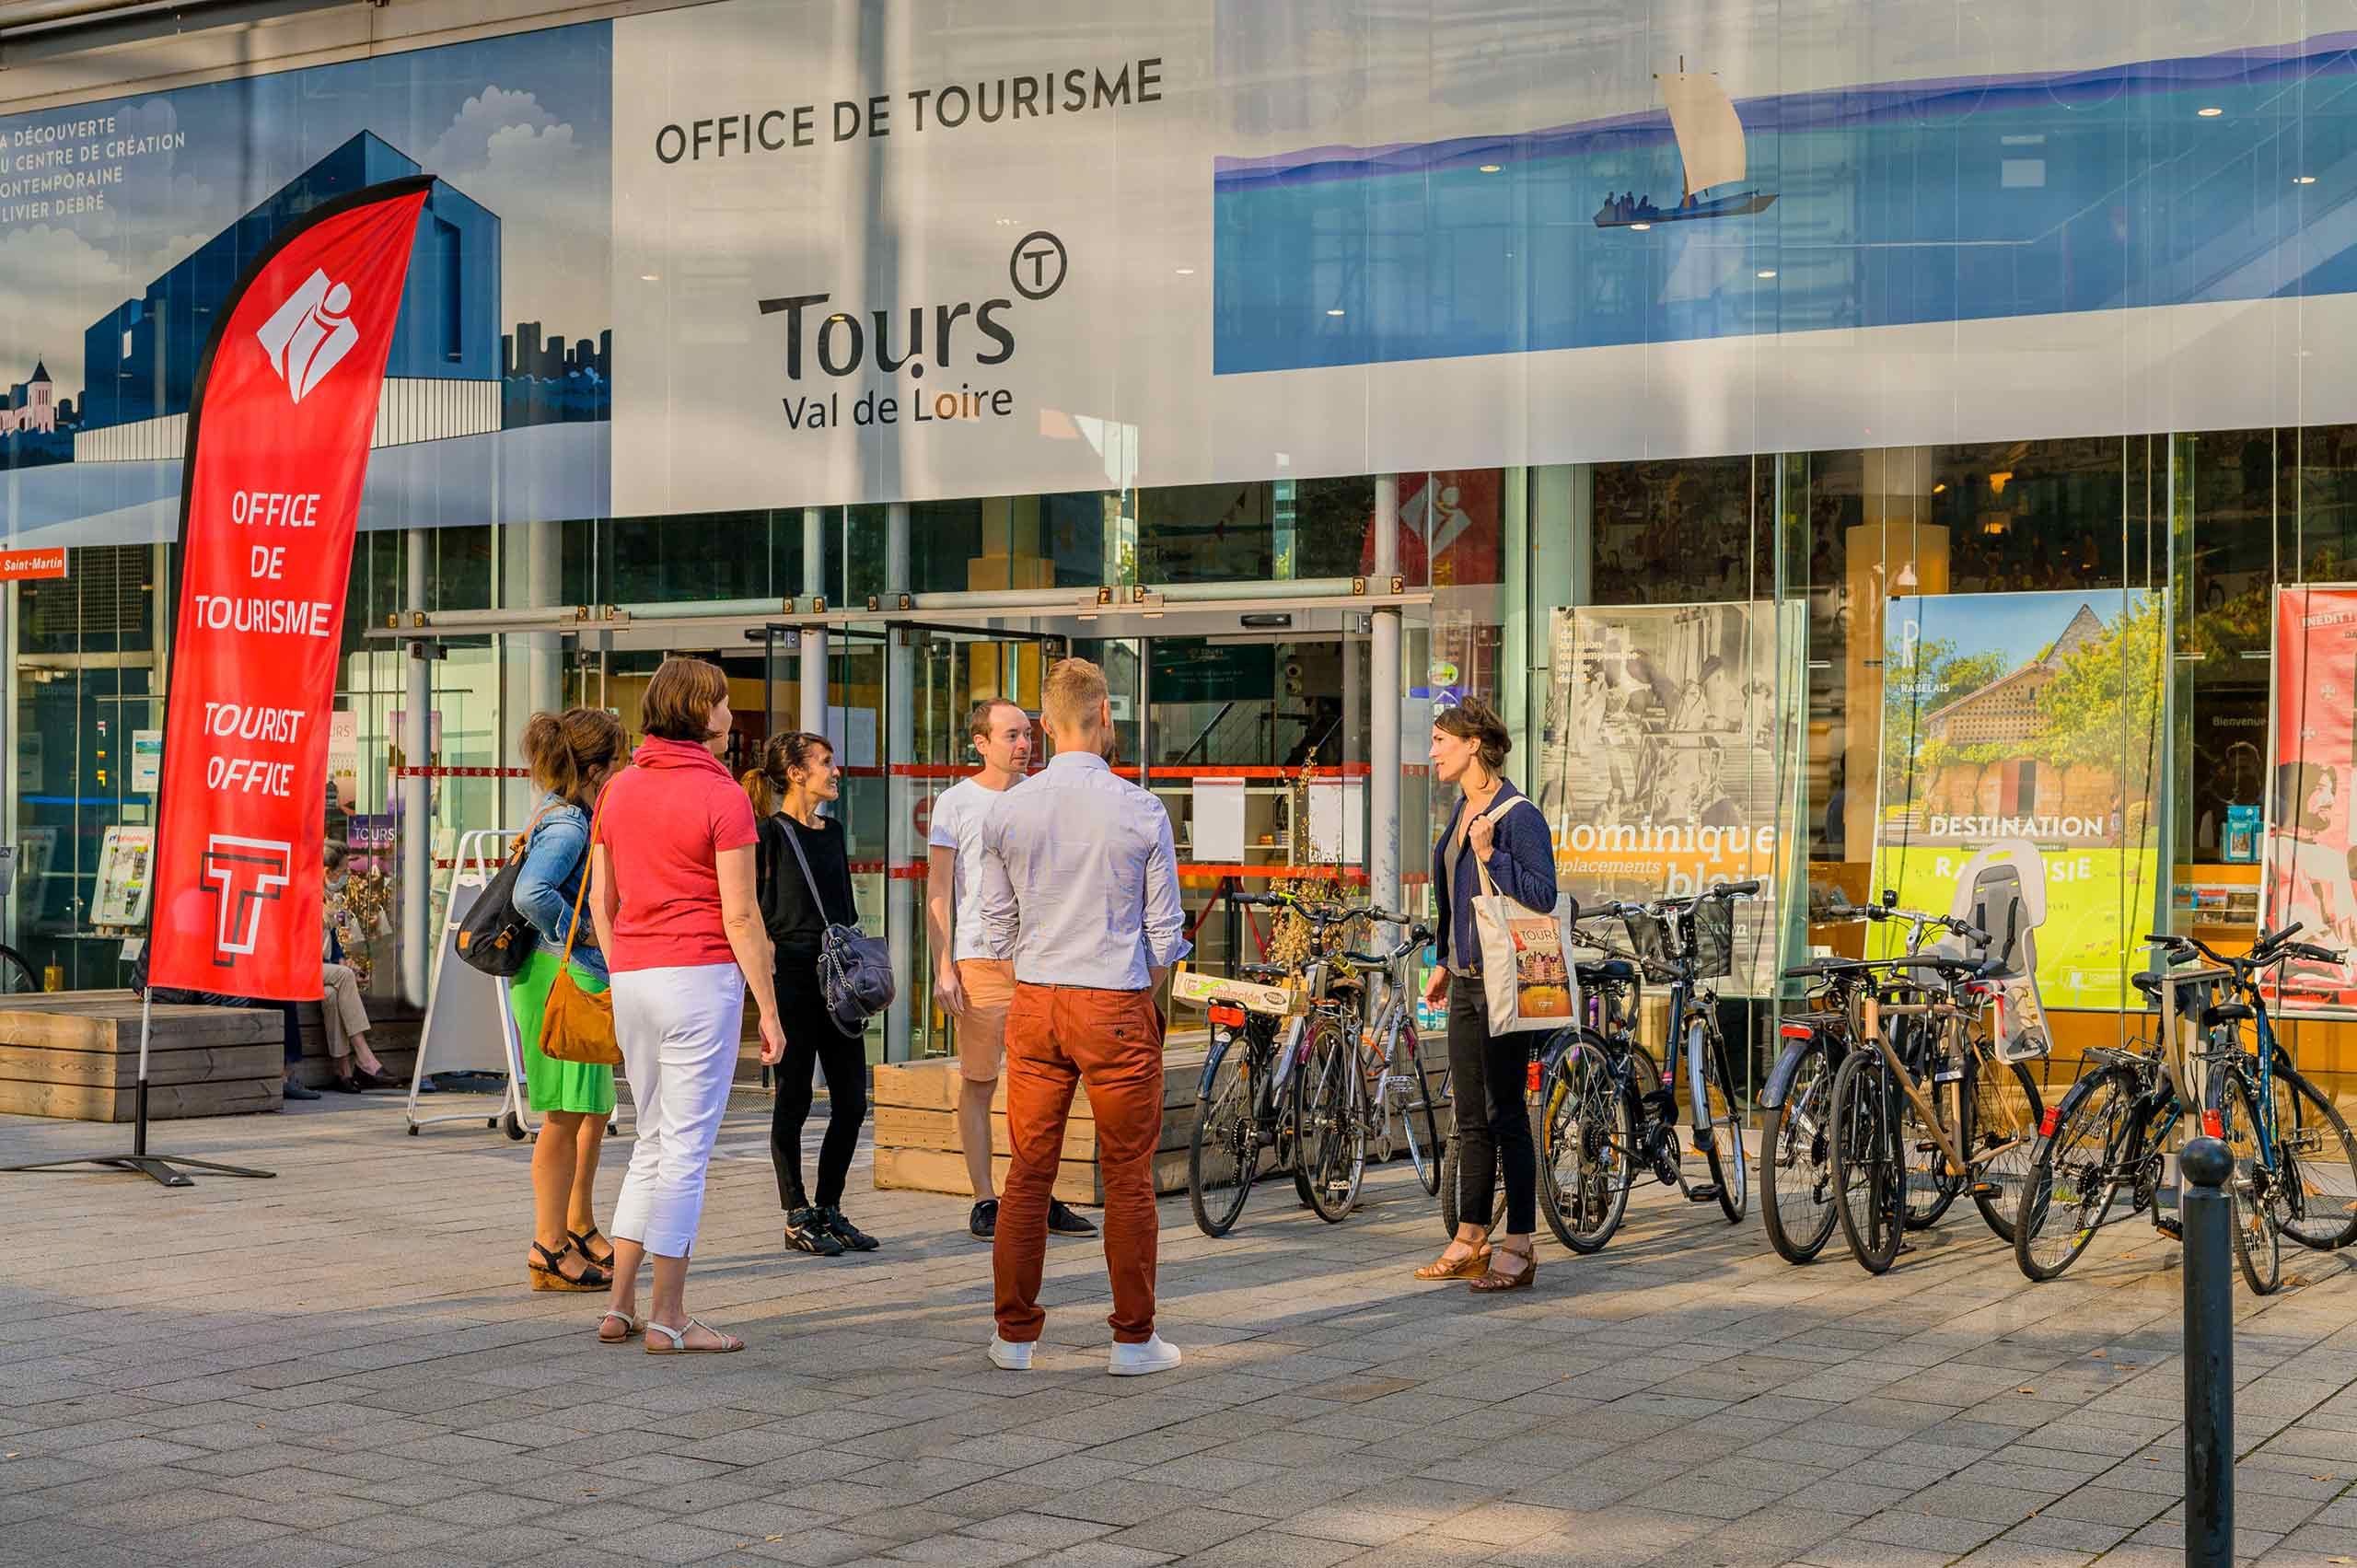 Office de Tourisme Tours Val de Loire